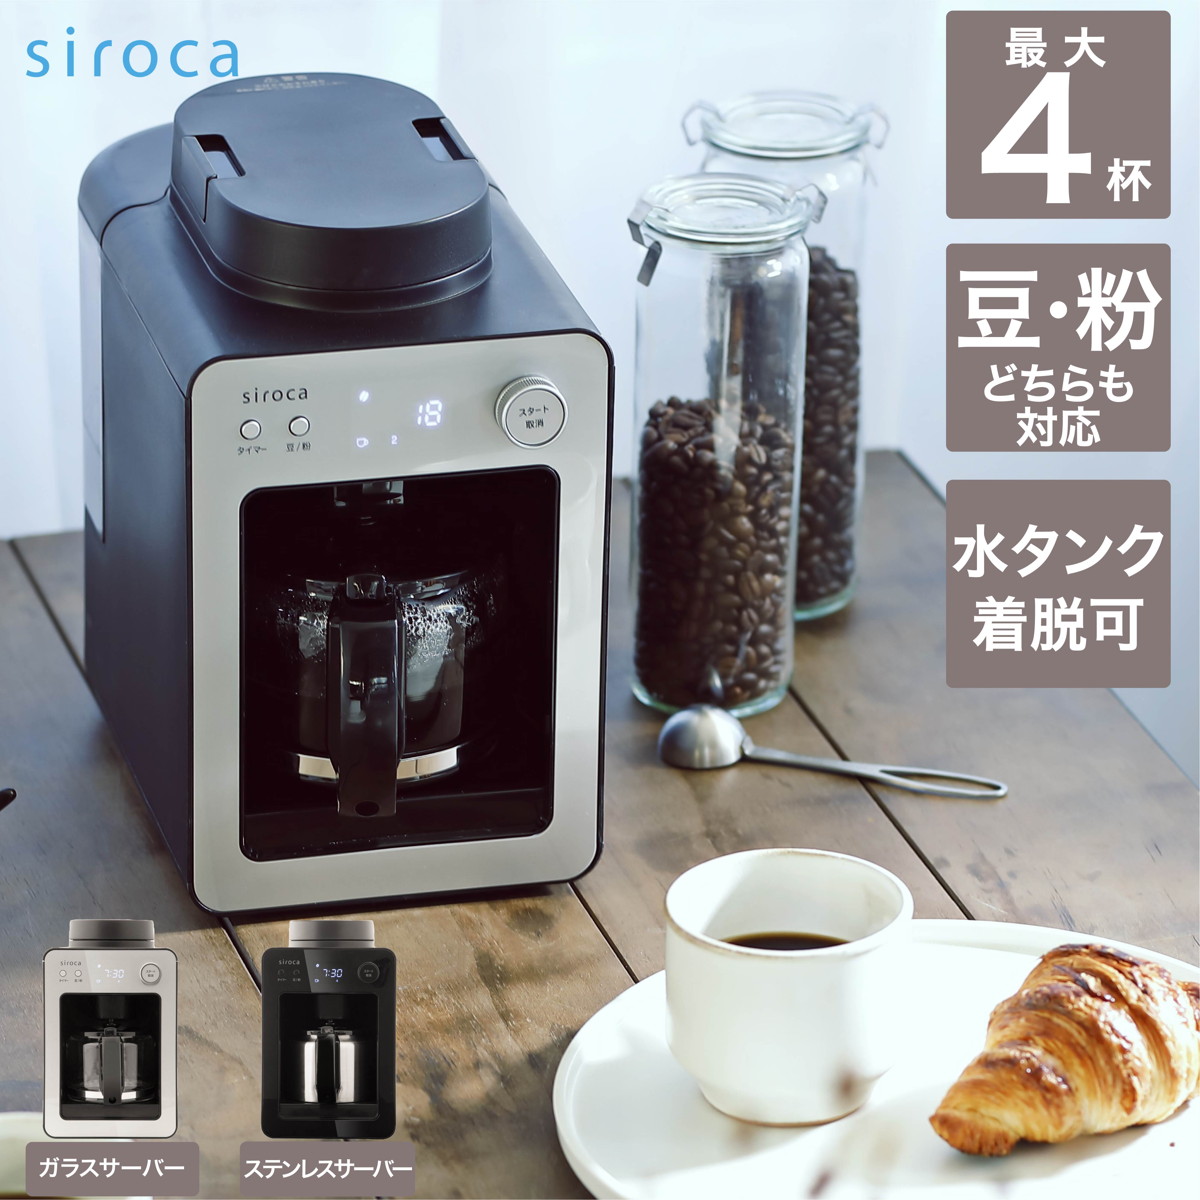 シロカ 感謝価格 siroca 全自動コーヒーメーカー SC-A351 S 今季も再入荷 シルバー